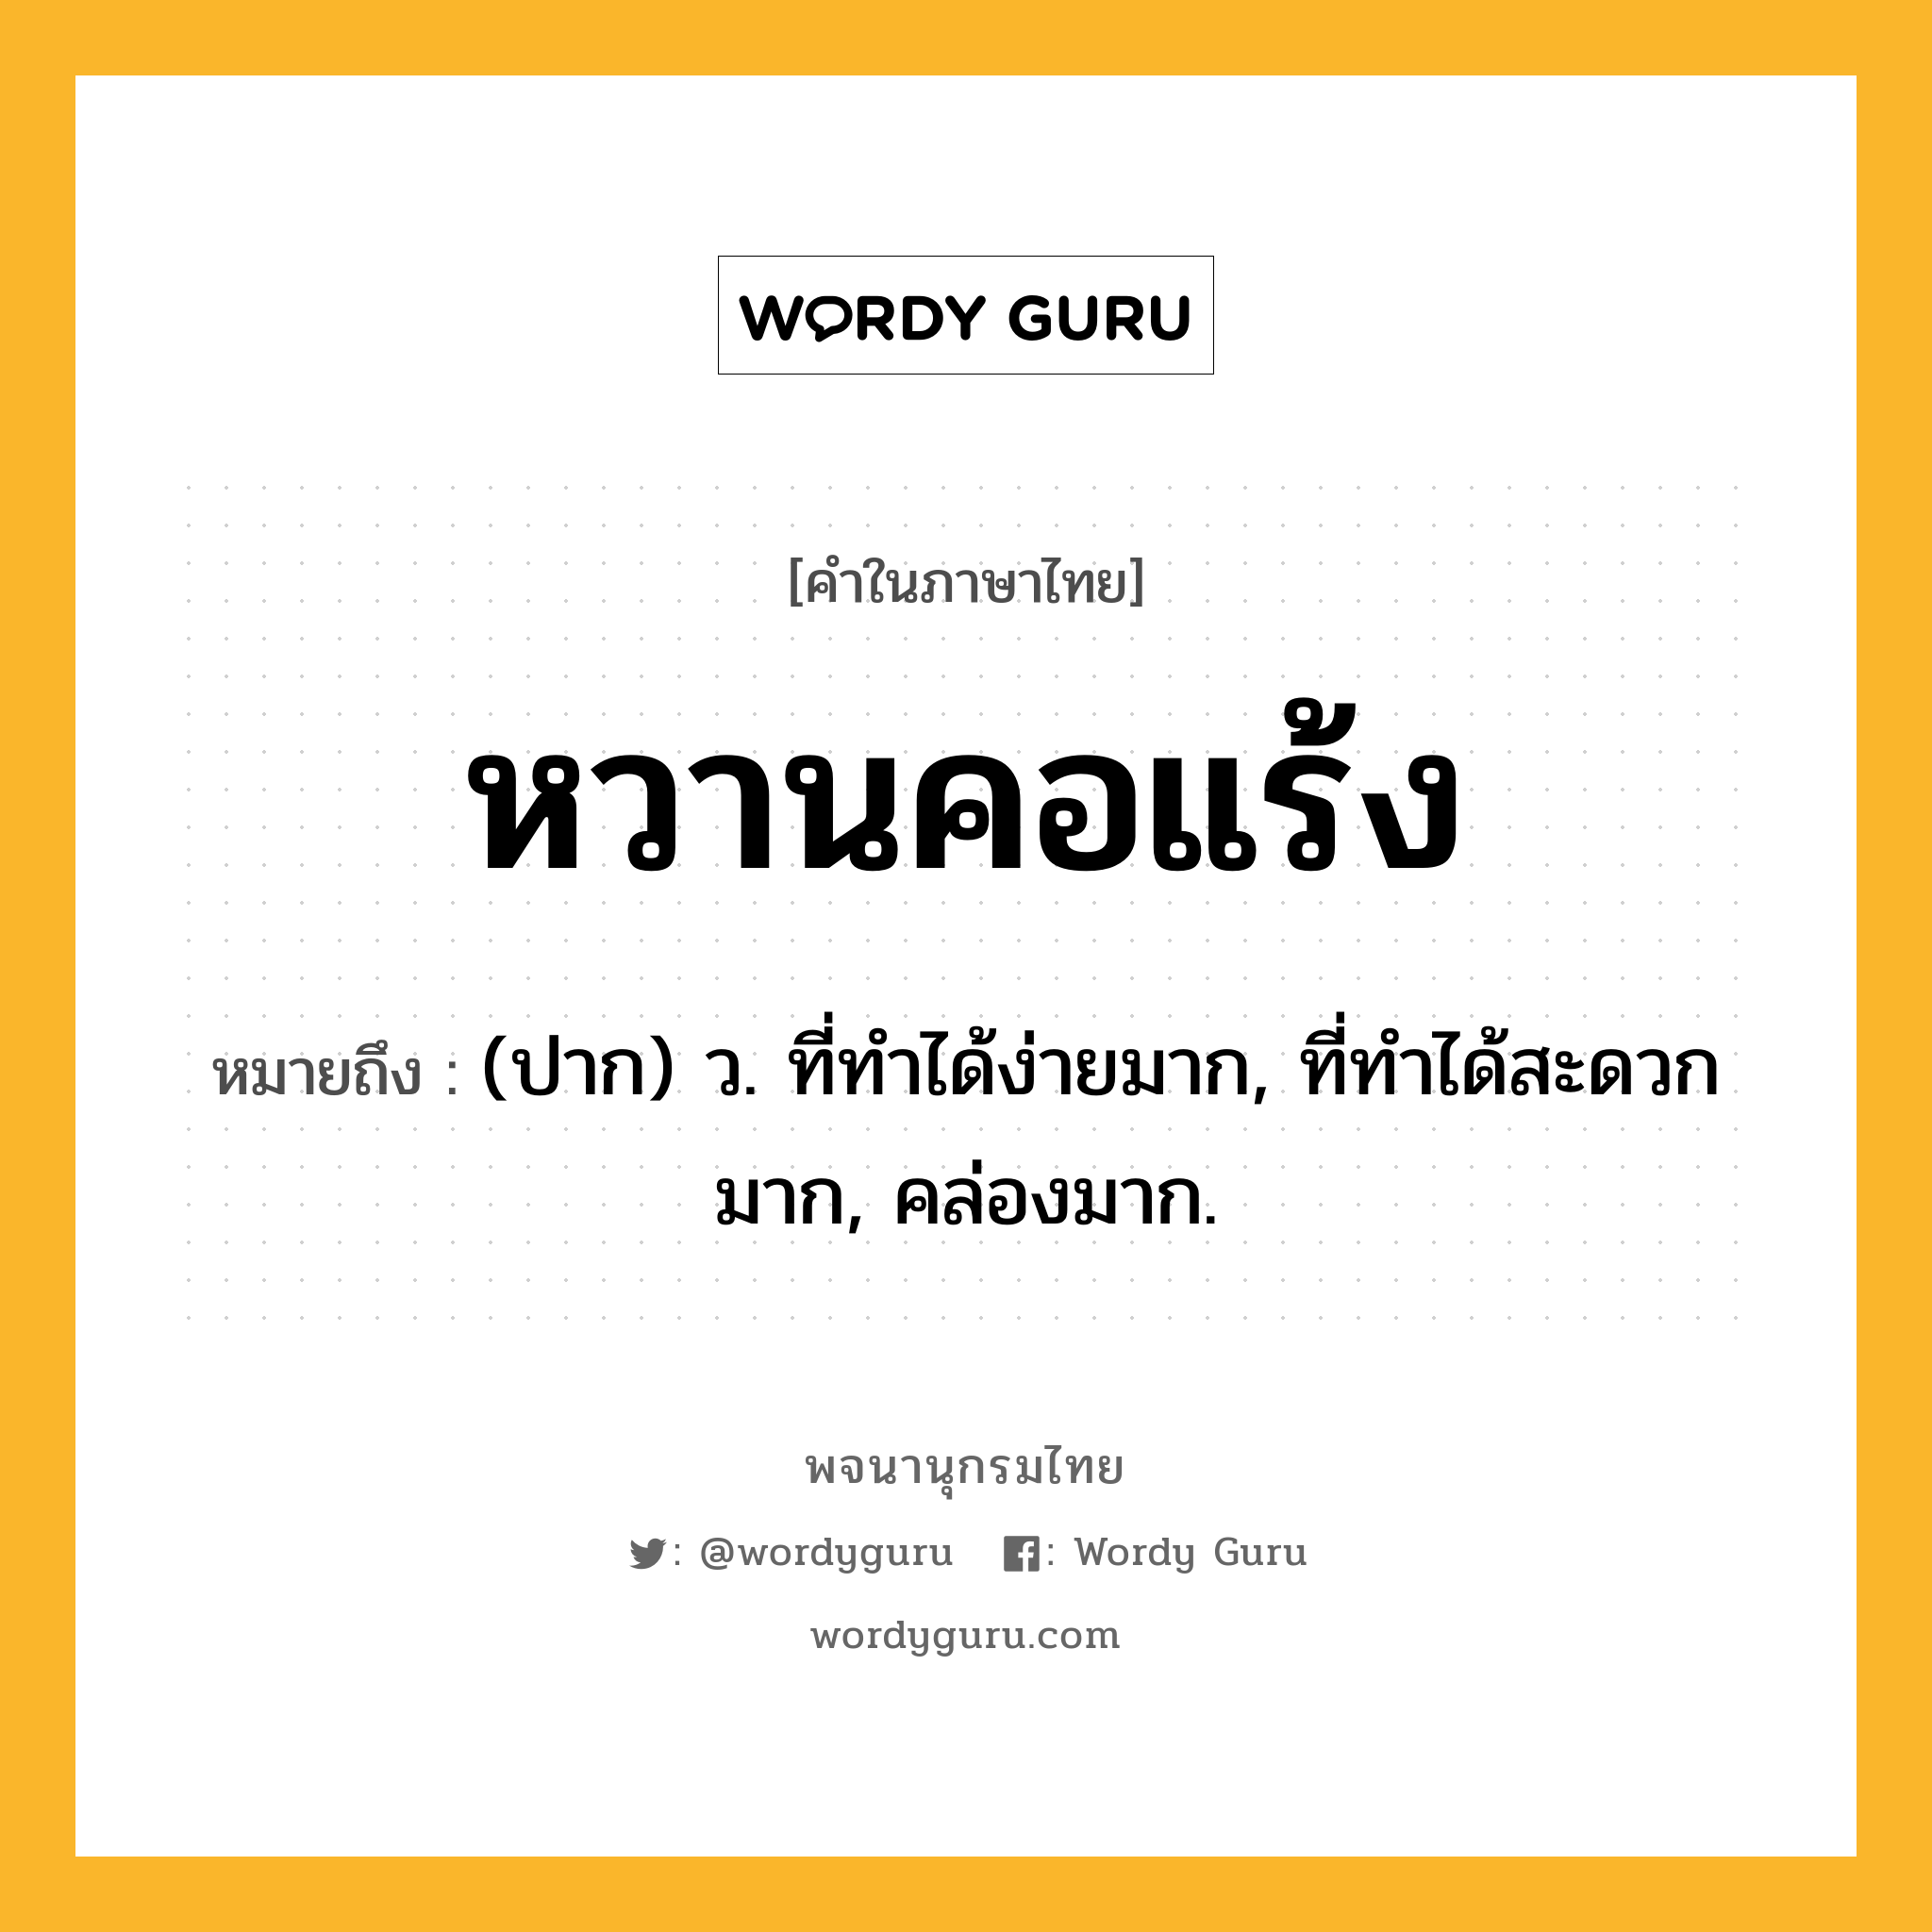 หวานคอแร้ง ความหมาย หมายถึงอะไร?, คำในภาษาไทย หวานคอแร้ง หมายถึง (ปาก) ว. ที่ทำได้ง่ายมาก, ที่ทำได้สะดวกมาก, คล่องมาก.